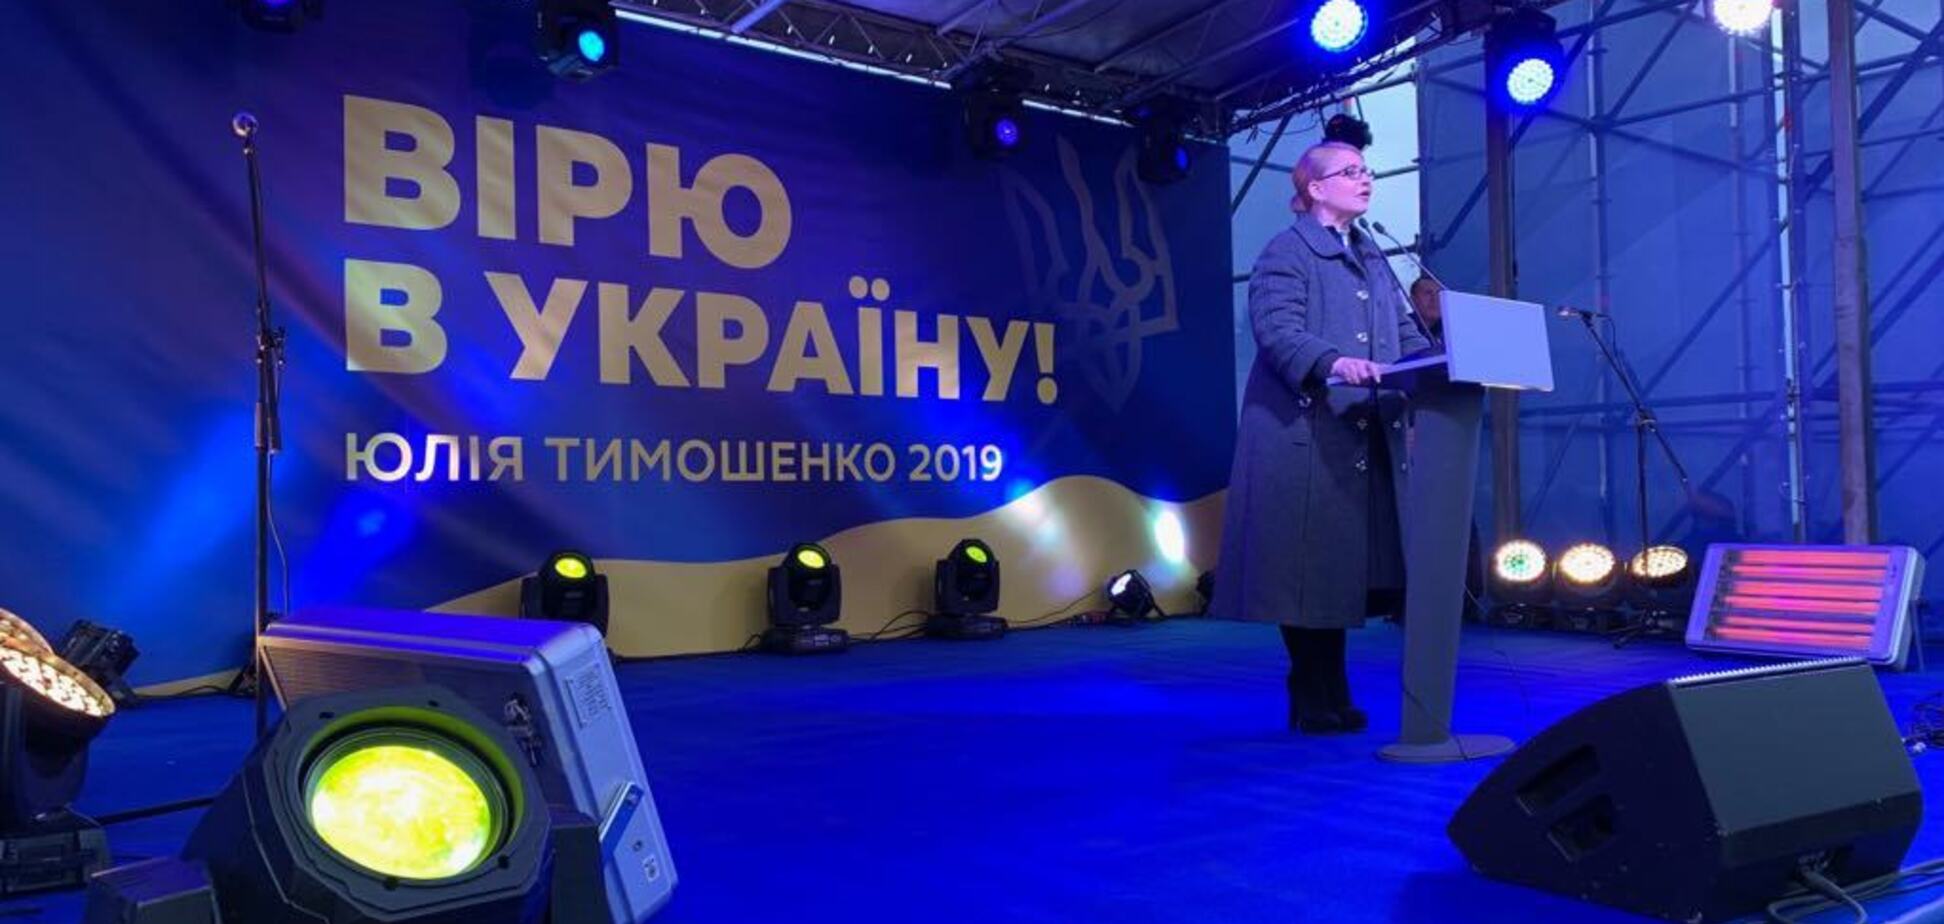 Тимошенко: 'Нынешние выборы – это шанс на реальные изменения в стране'